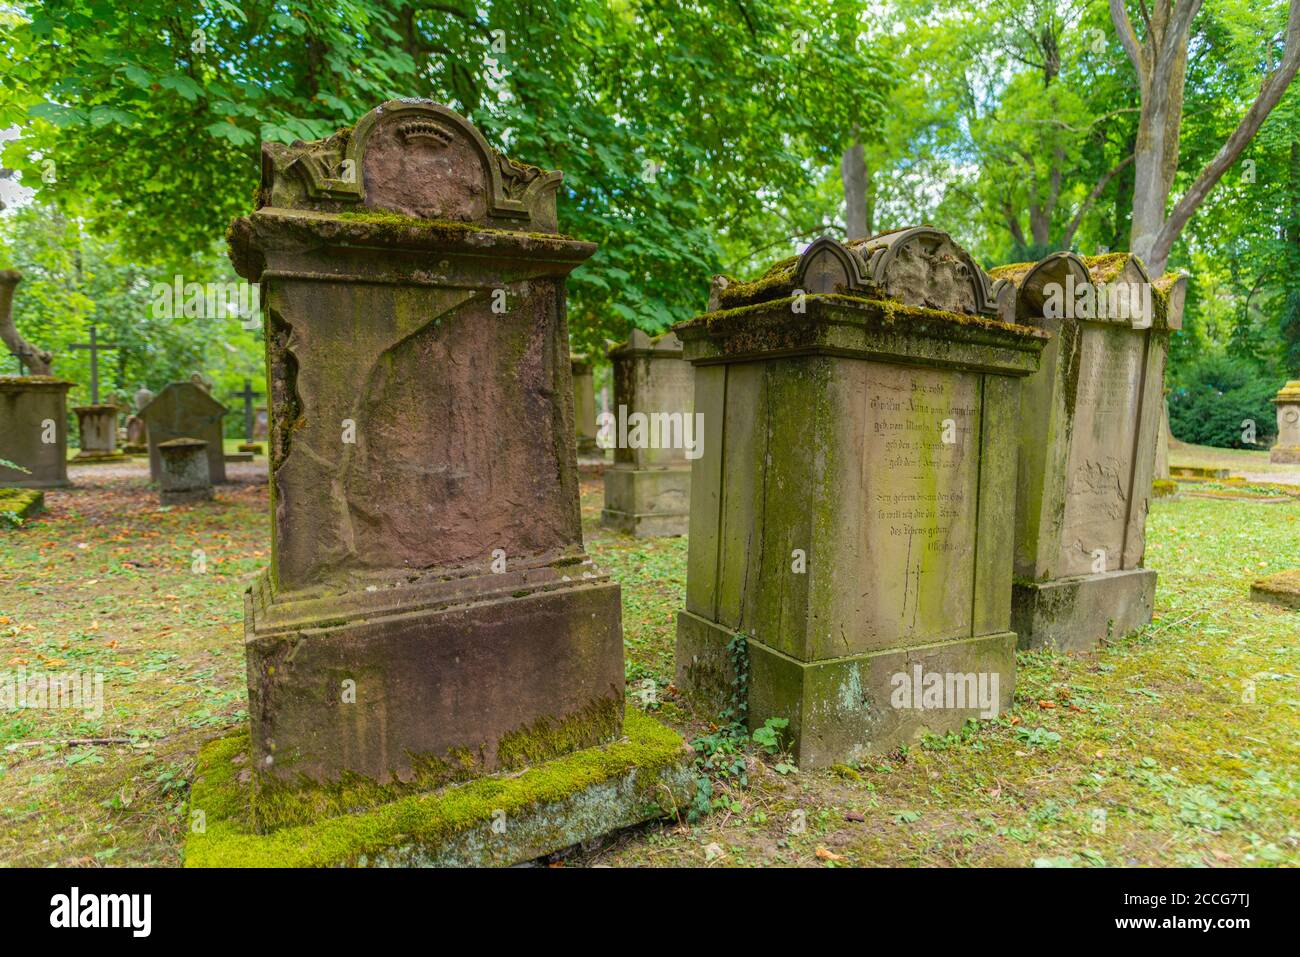 Hoppenlaufriedhof or Hoppenlau Cemetery of 1626, Stuttgart, Baden-Württemberg, South Germany, Europe Stock Photo